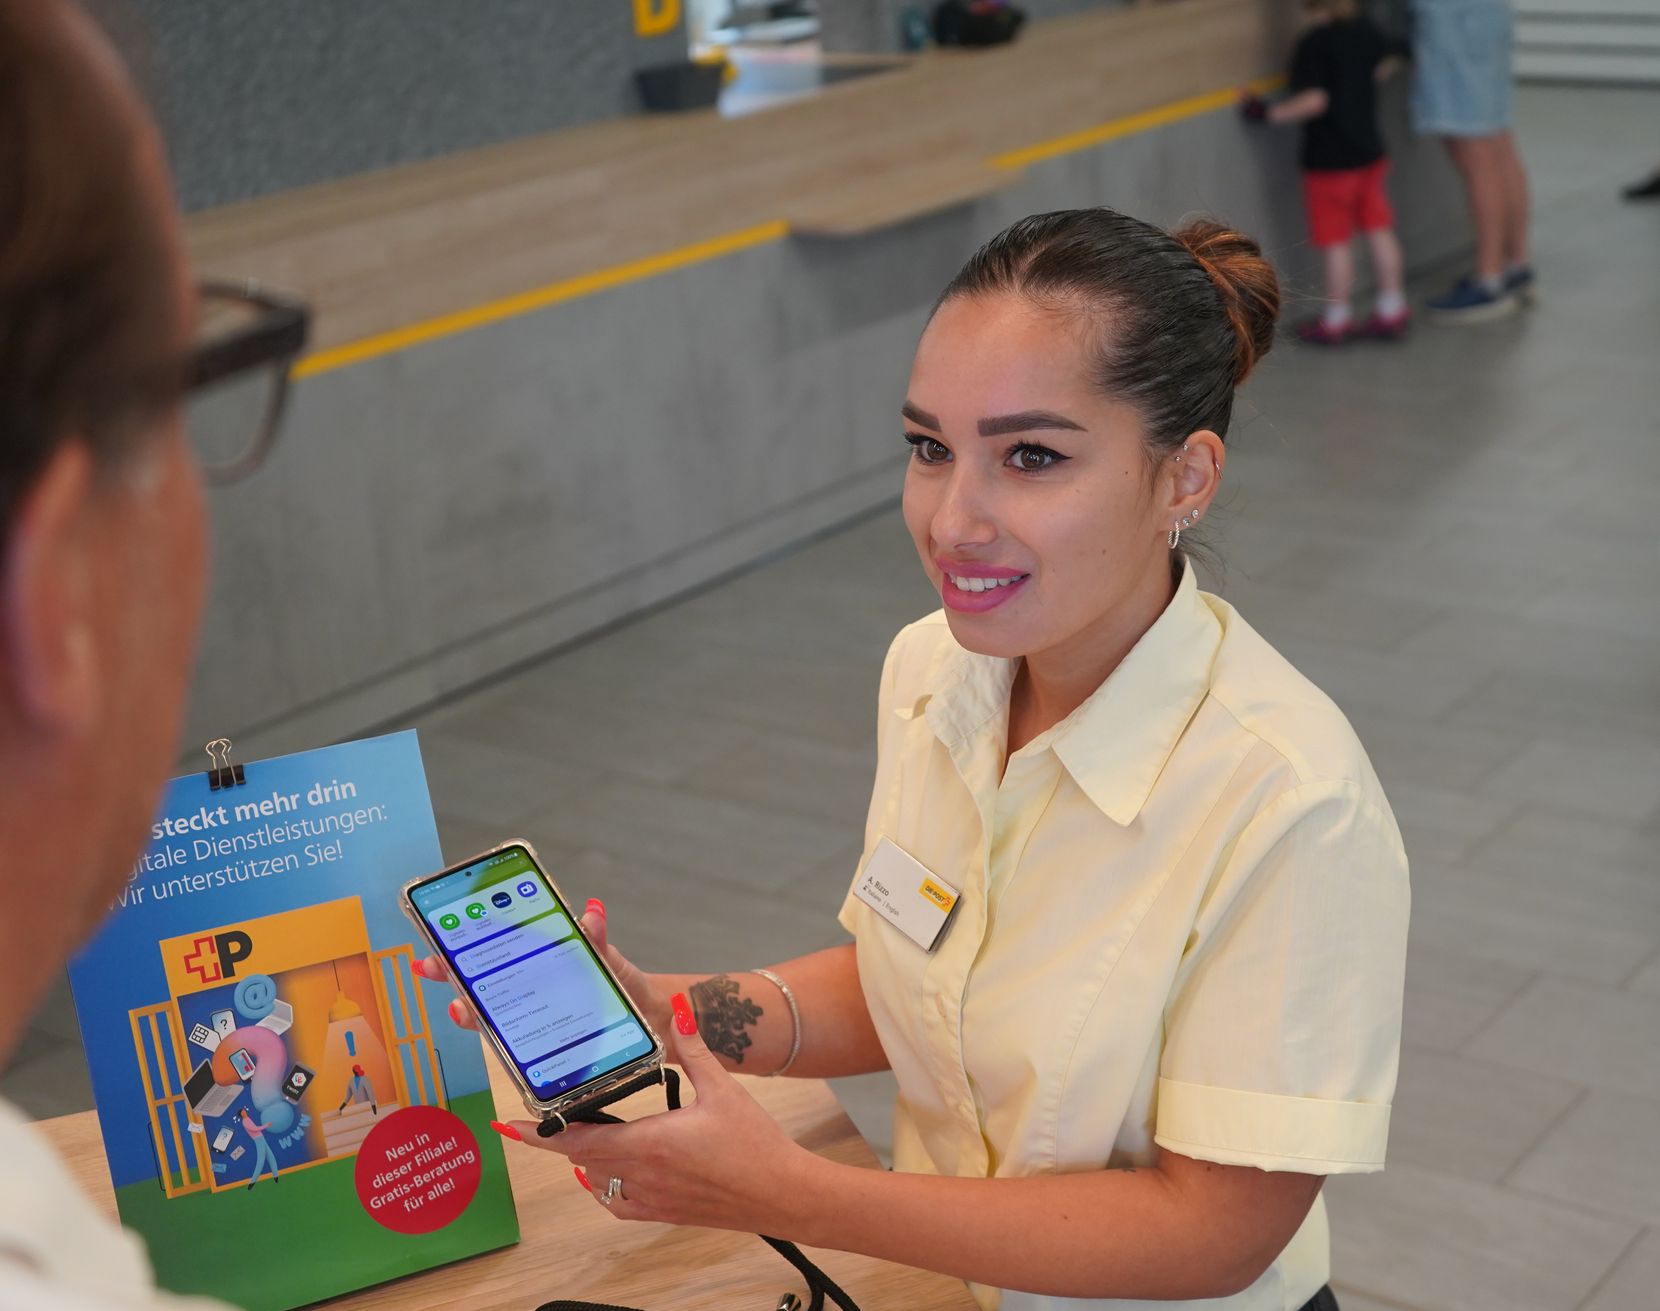 Eine junge Postangestellte hält ein Smartphone in der Hand und erklärt einem Kunden etwas.